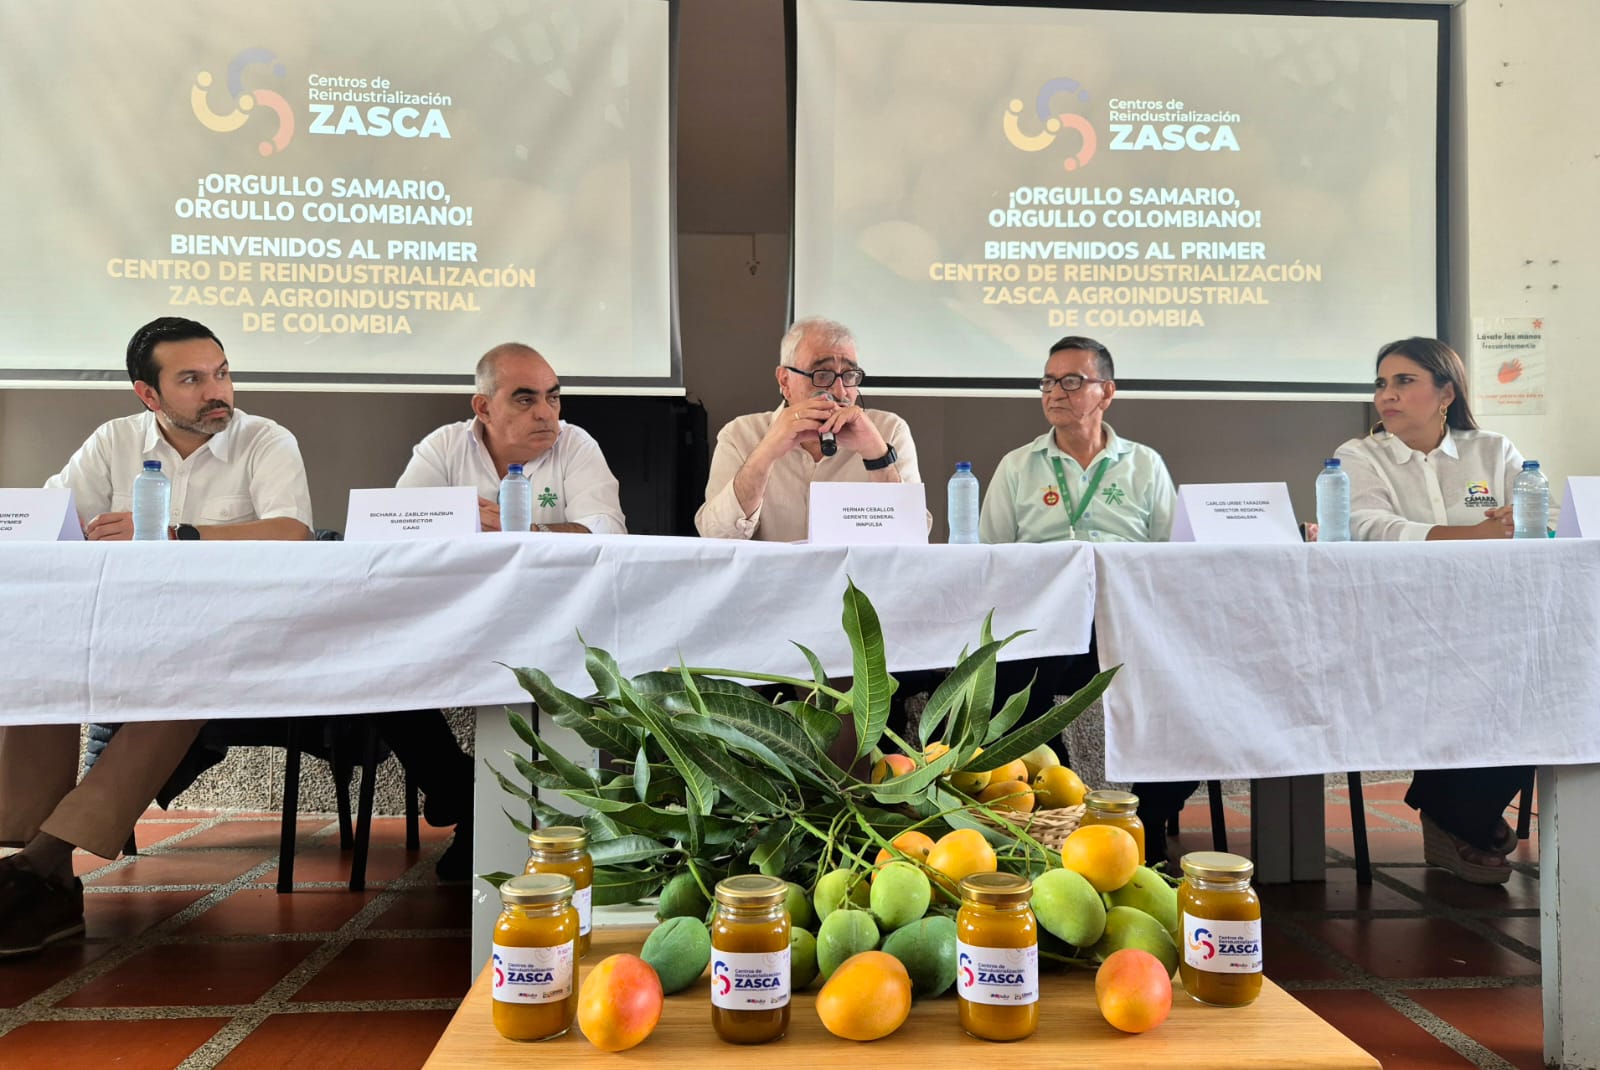 En Santa Marta, Gobierno del Cambio inaugura el primer Centro de Reindustrialización ZASCA con vocación agroindustrial del país